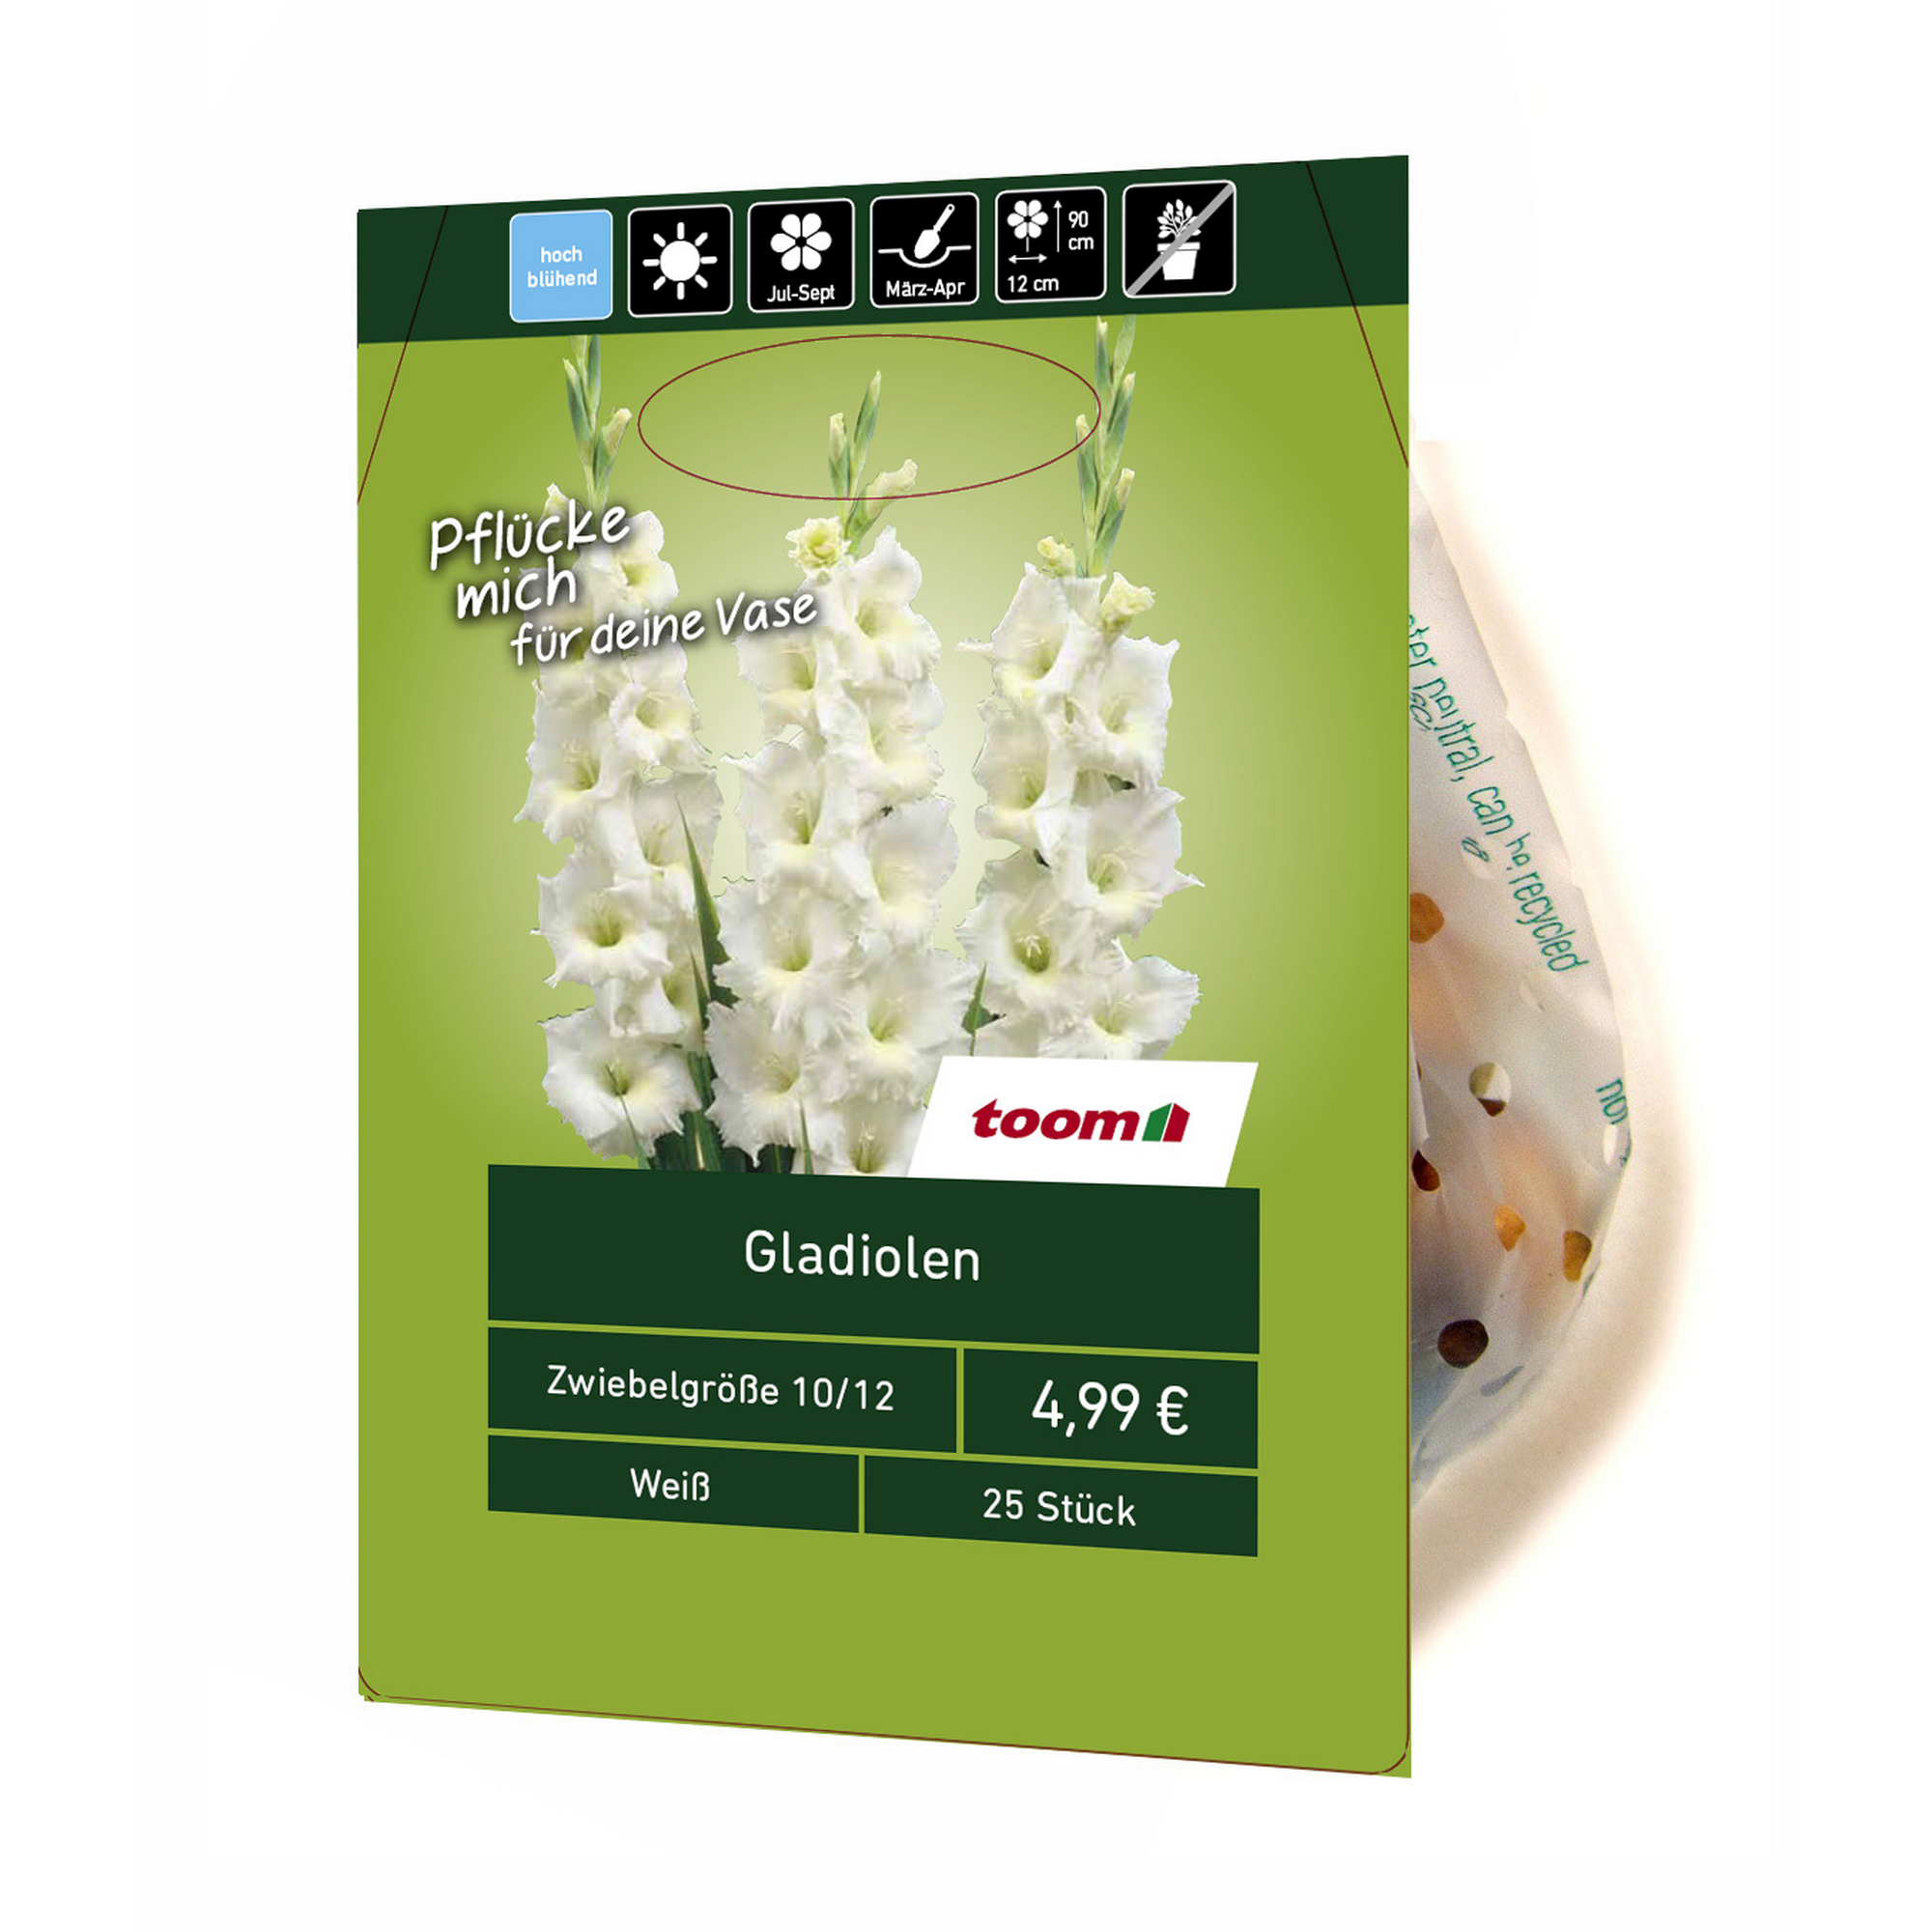 Gladiolen weiß 25 Stück + product picture